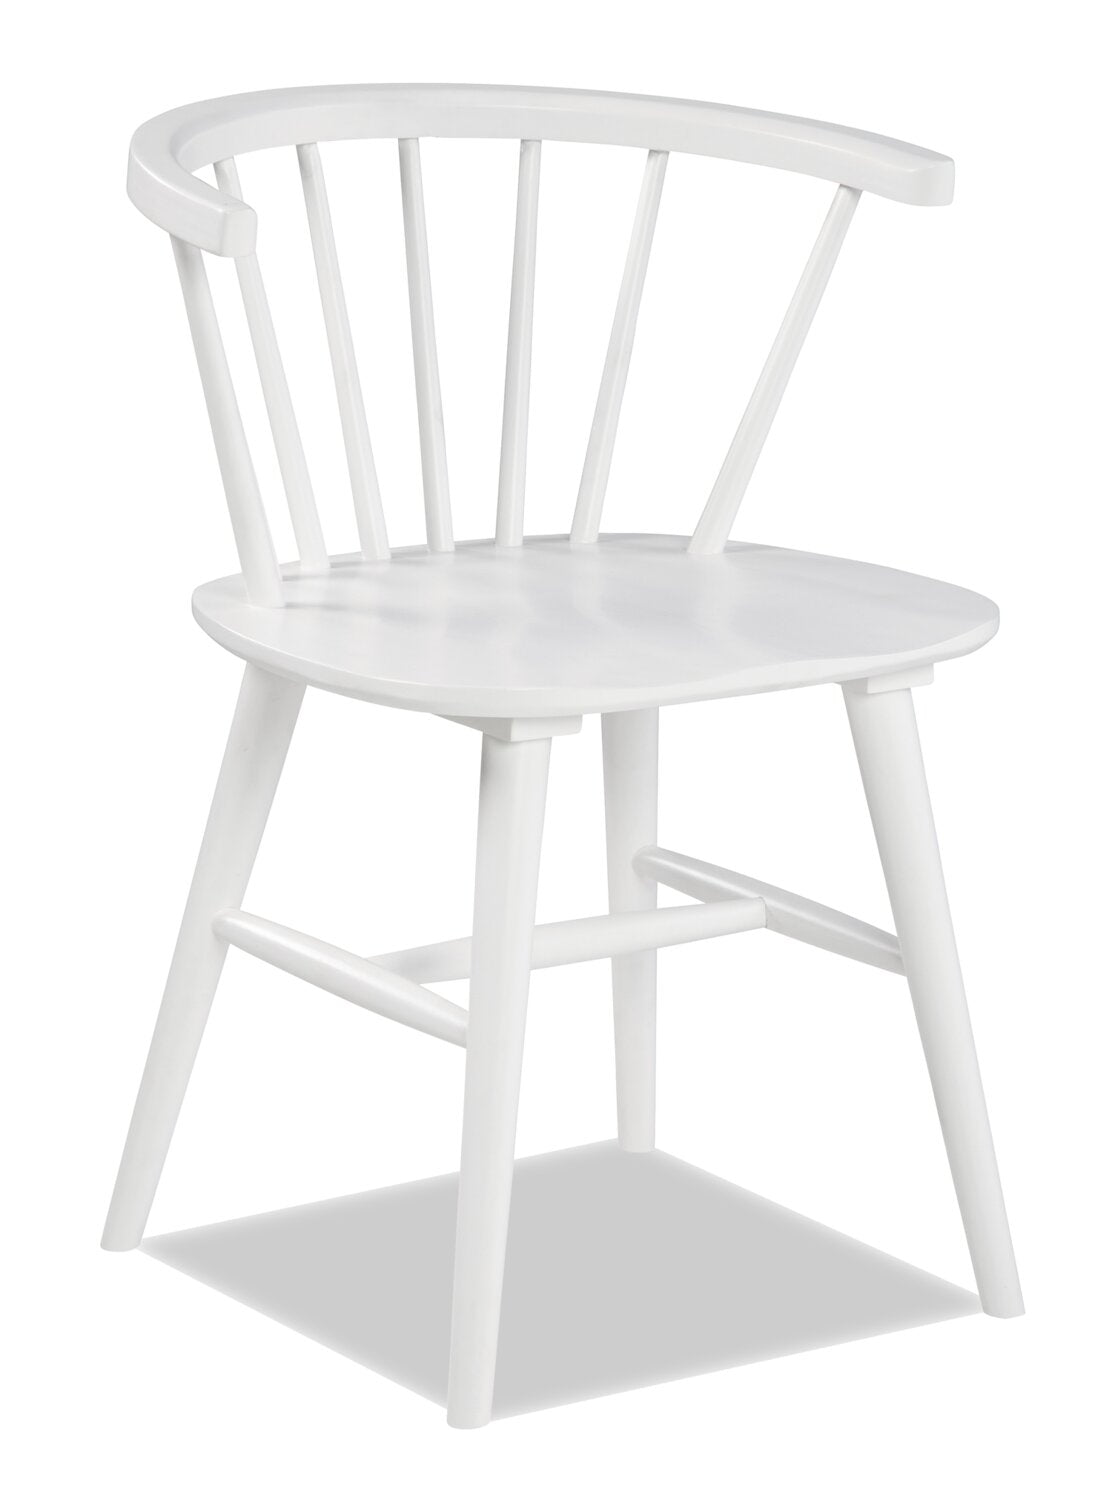 Telos Dining Chair - White